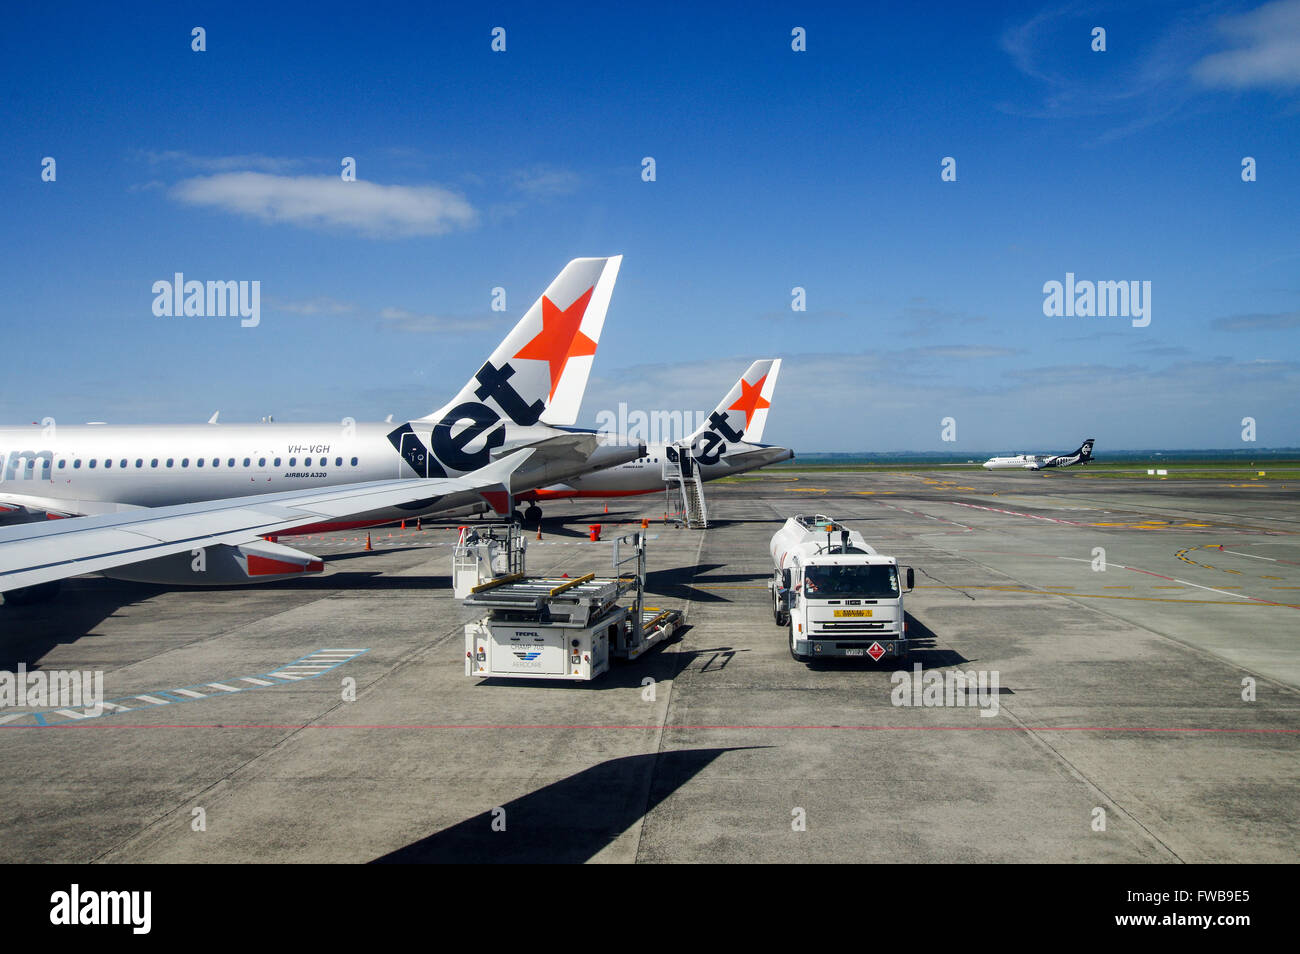 Tails von Jetstar Flugzeug geparkt auf dem Vorfeld in Auckland Flughafen mit Air New Zealand Rollen im Hintergrund Stockfoto